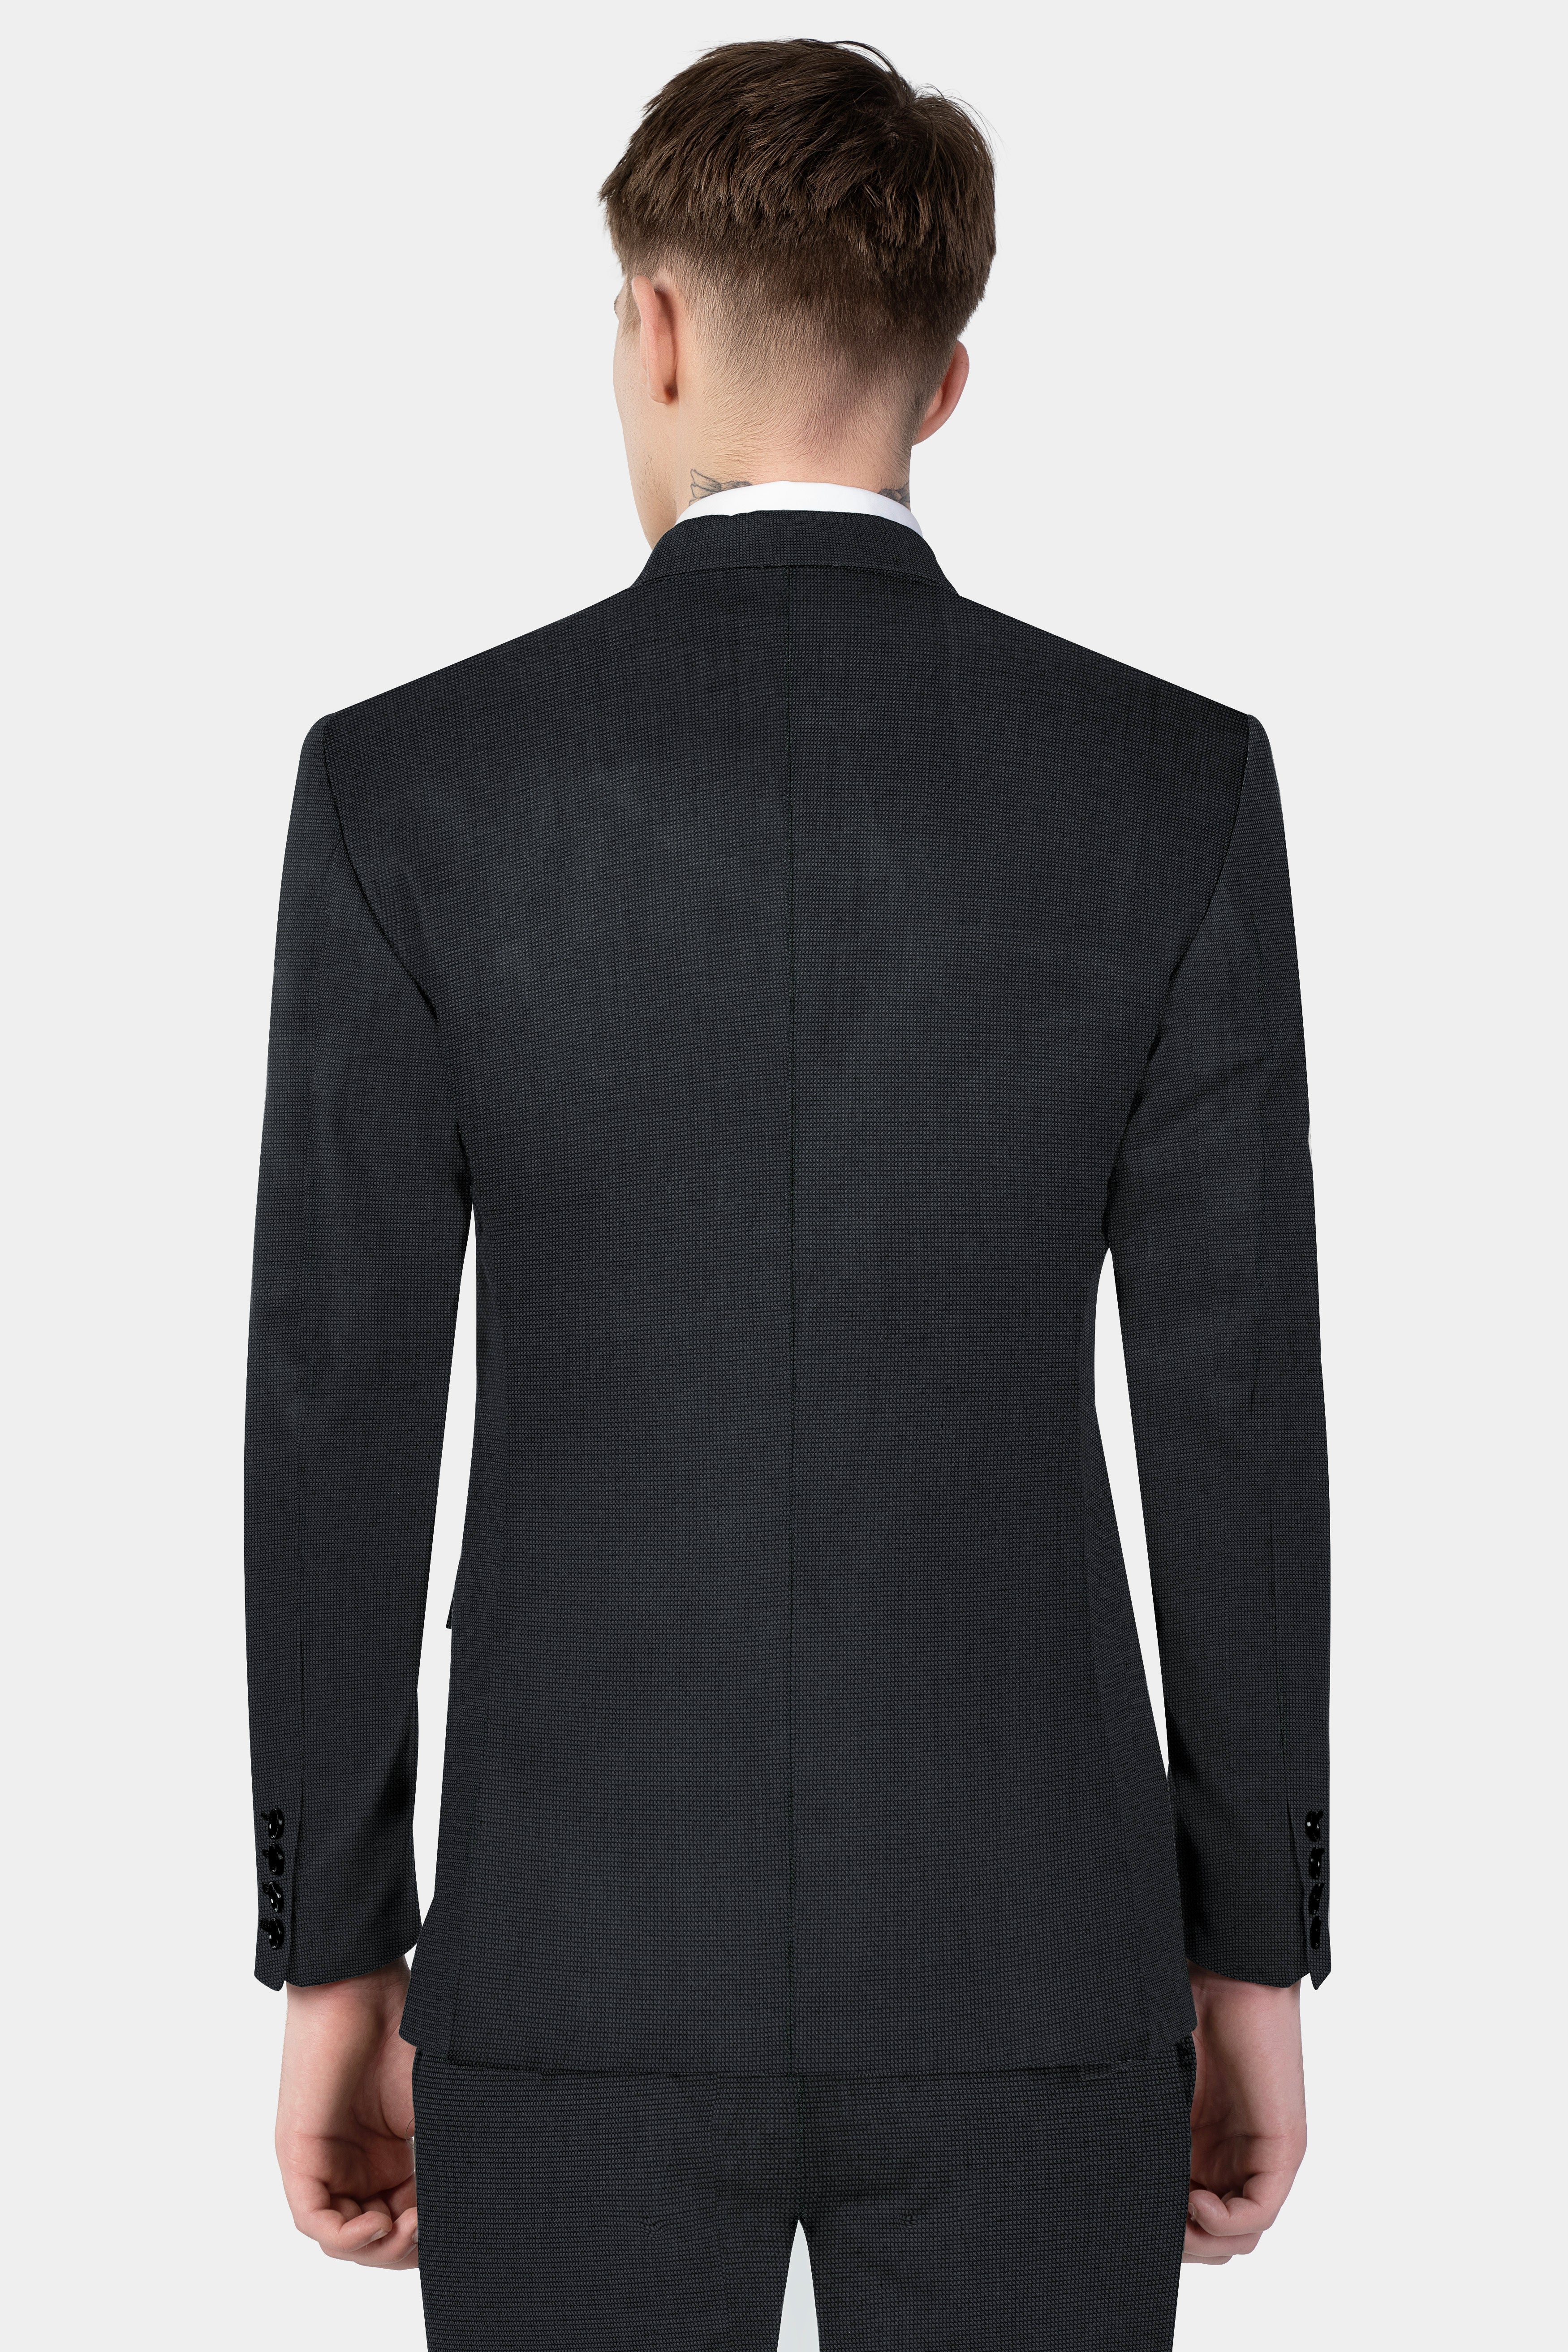 Jade Black Textured Wool Blend Suit